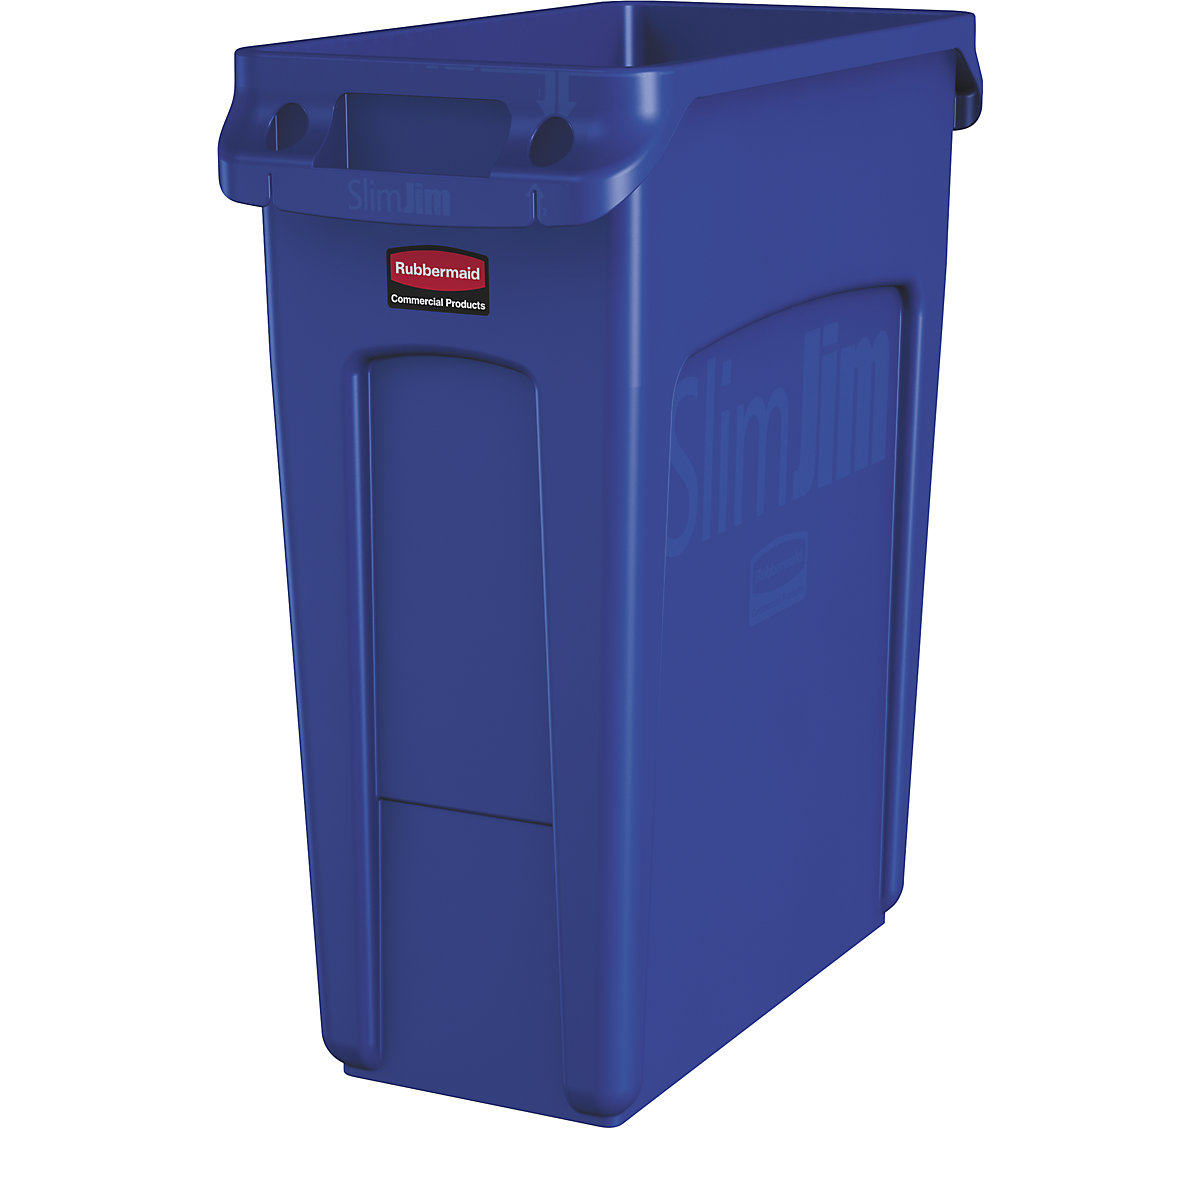 Verzamelaar voor kringloopmateriaal/afvalbak SLIM JIM® – Rubbermaid, volume 60 l, met ventilatiekanalen, blauw, vanaf 3 stuks-9